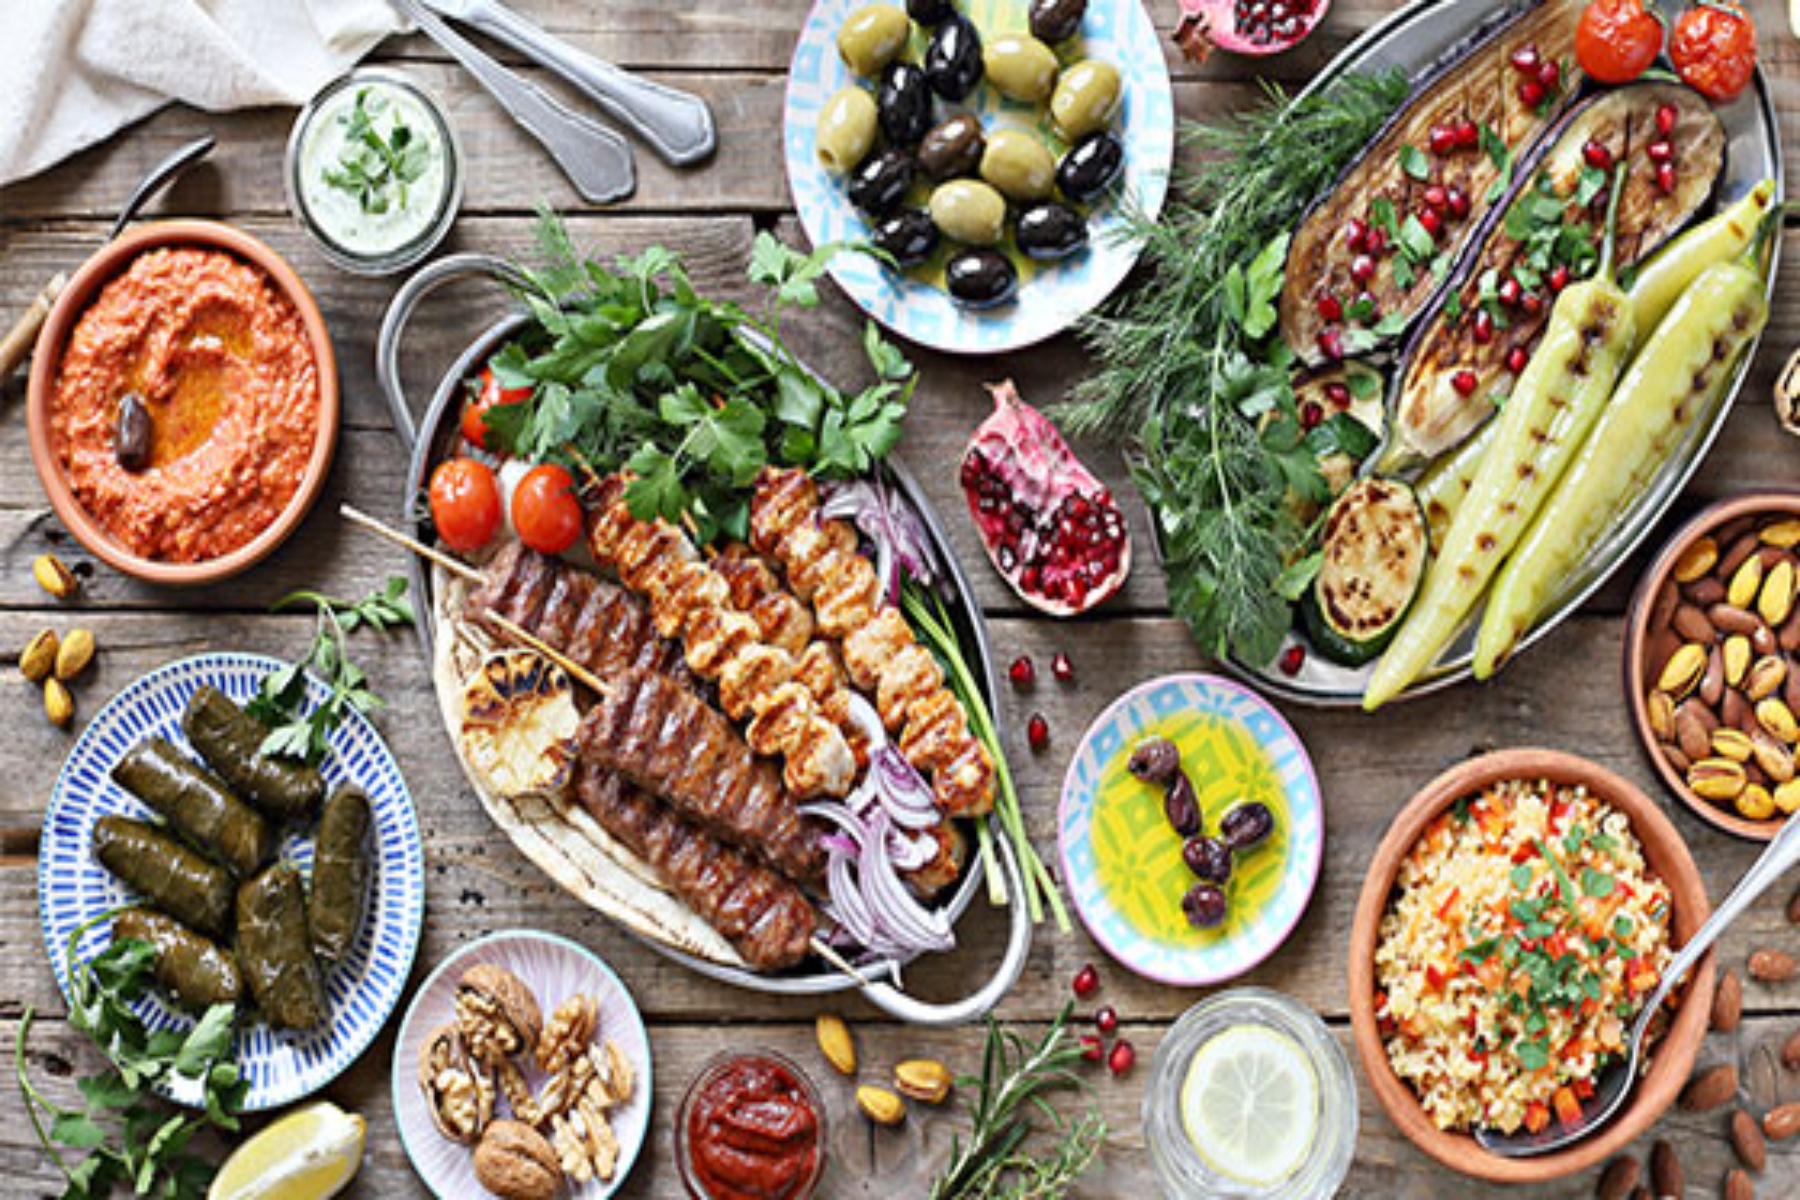 Διατροφή: Γιατί η μεσογειακή διατροφή θεωρείται η καλύτερη;